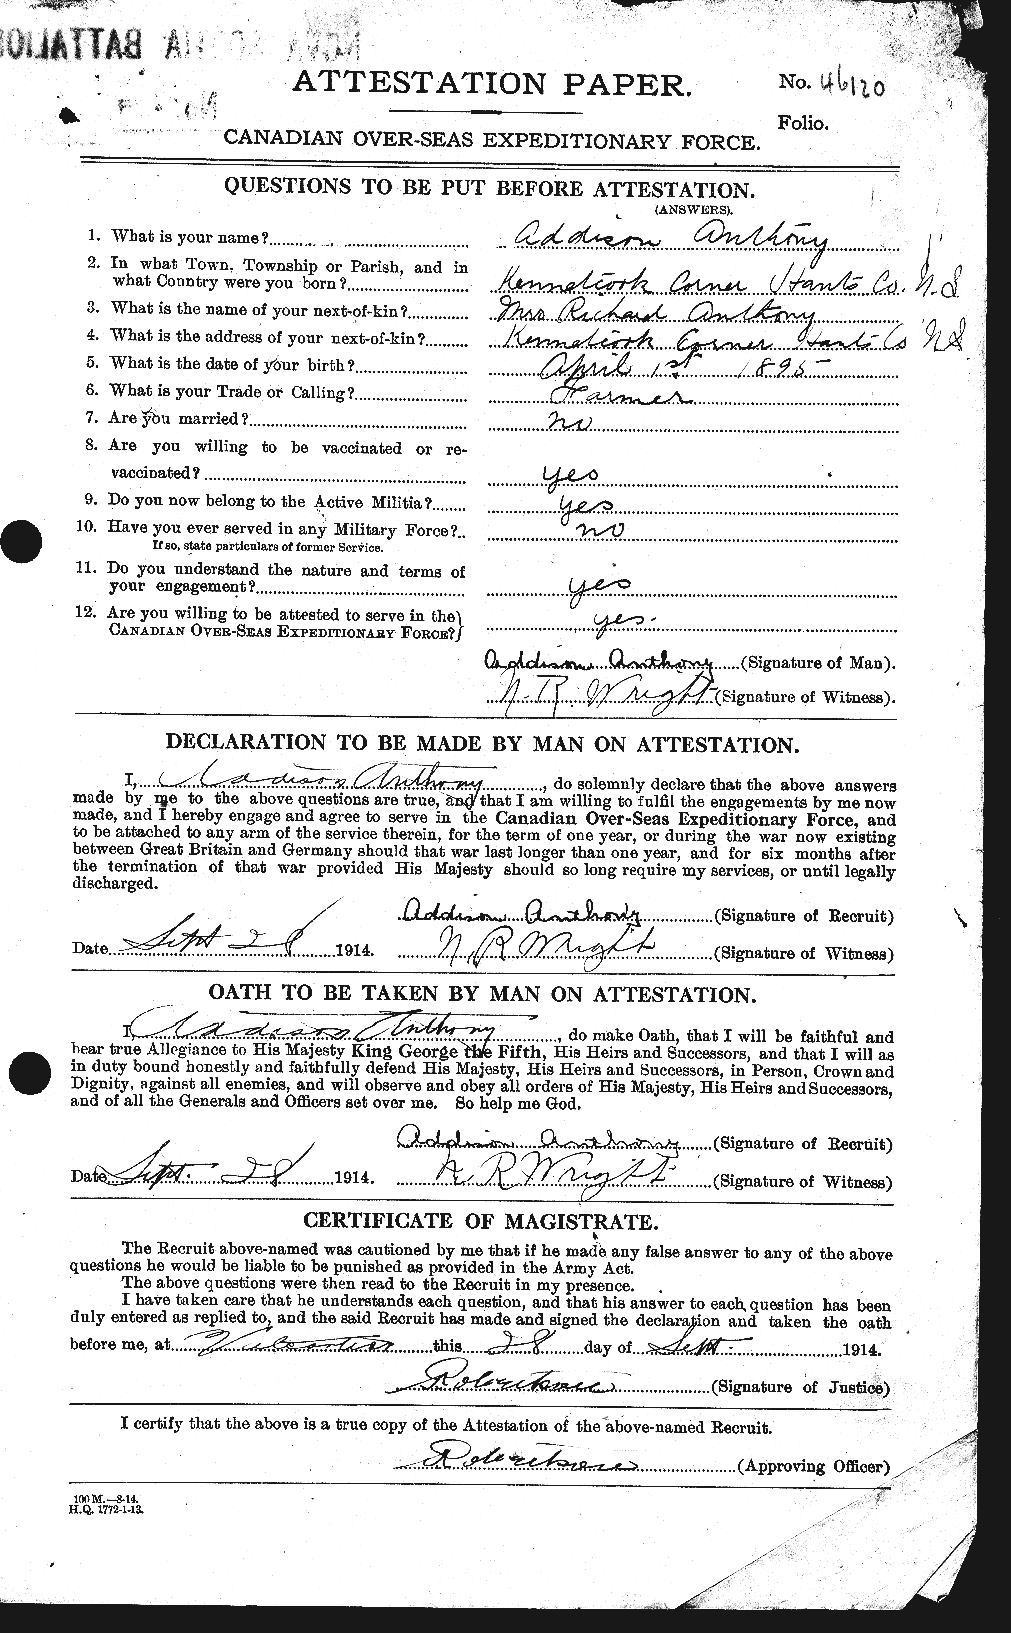 Dossiers du Personnel de la Première Guerre mondiale - CEC 212244a